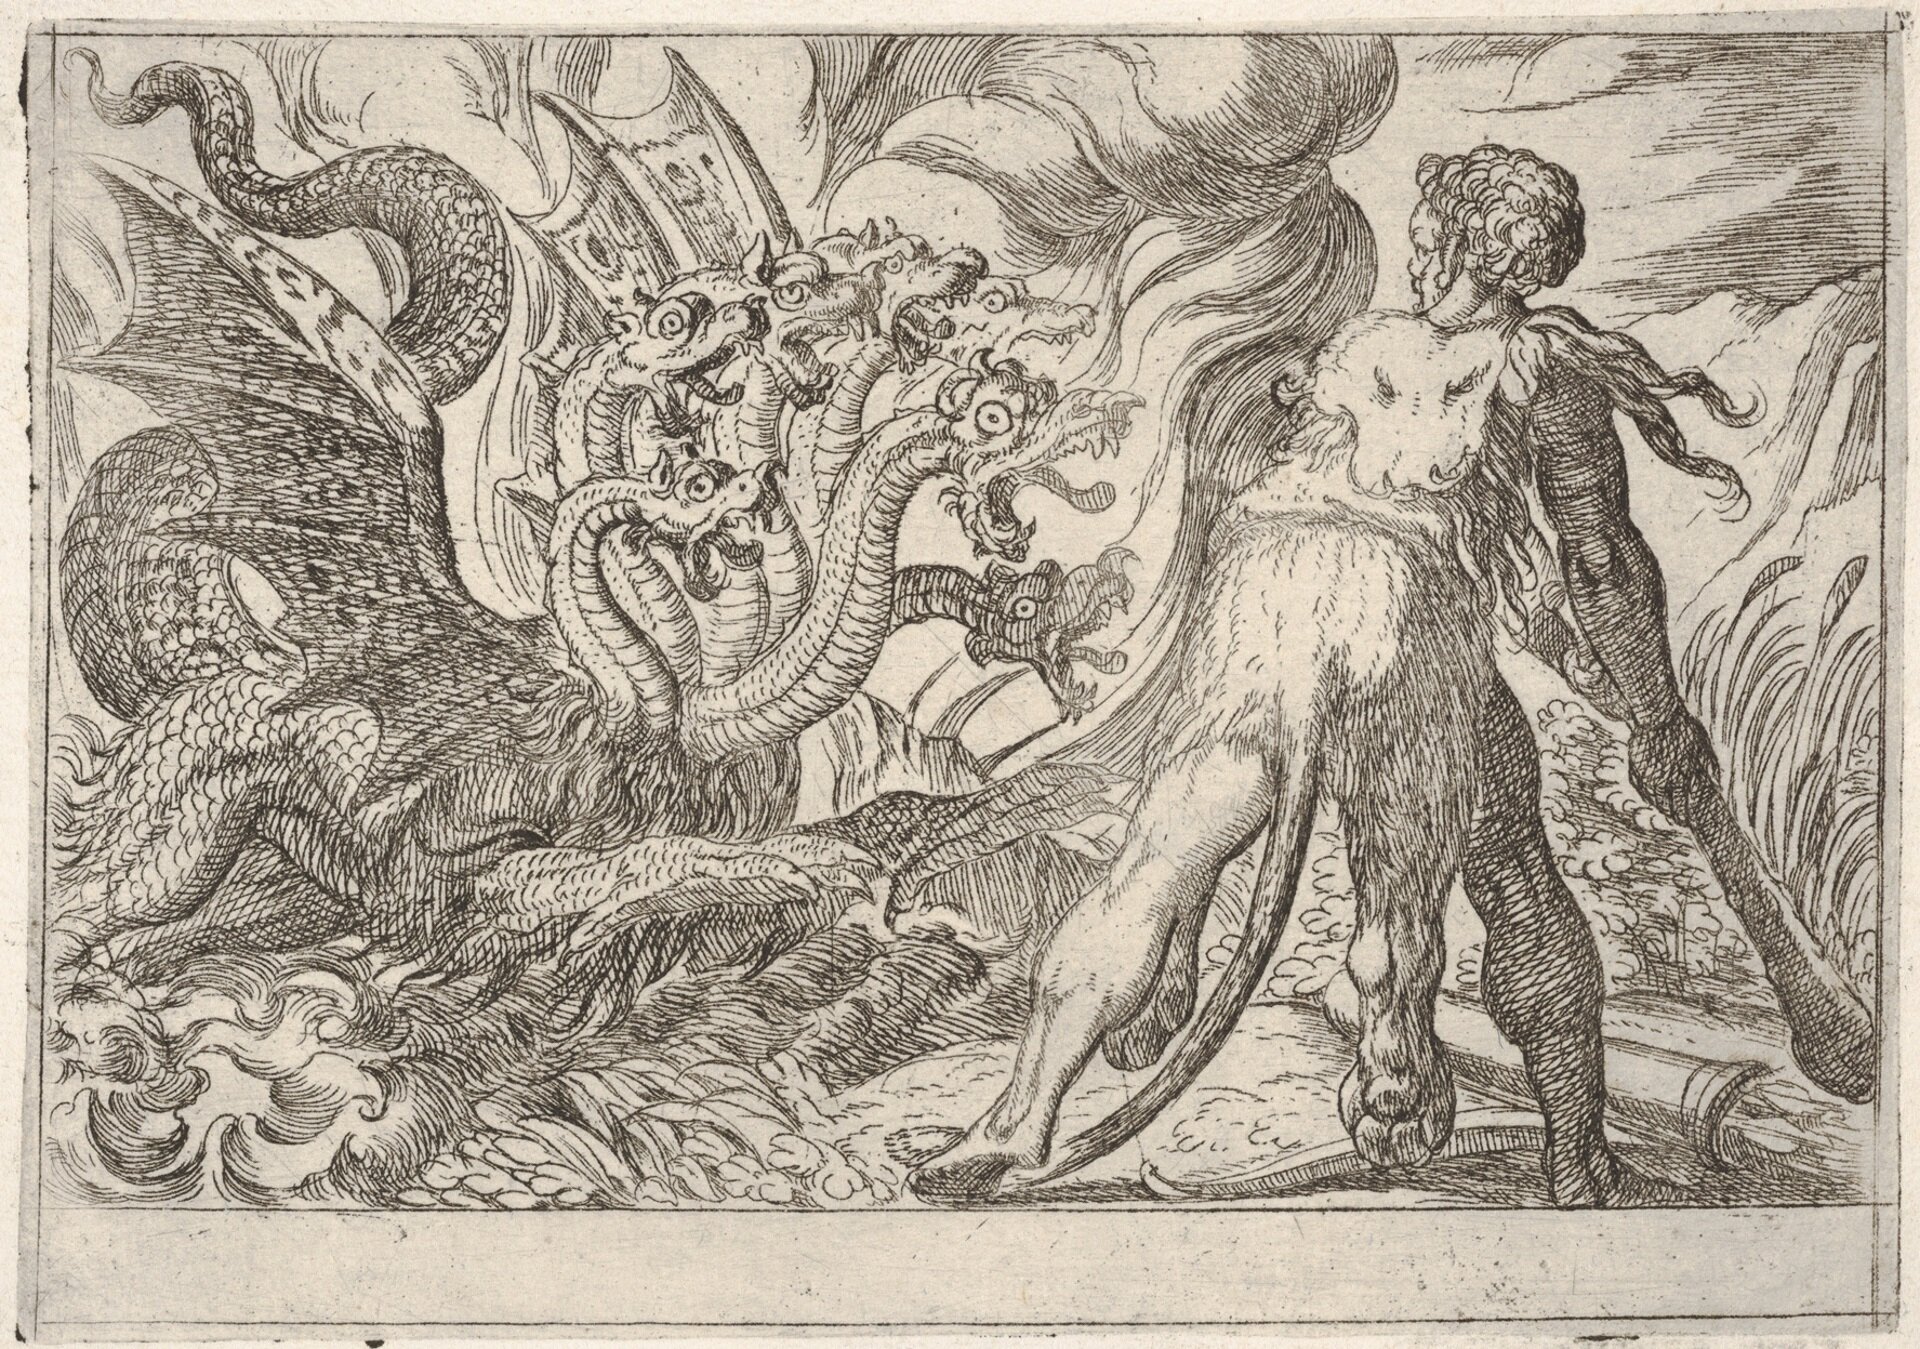 Ilustracja przedstawia pracę Antonio Tempesta pod tytułem „Herkules i Hydra Lemejska”. Scena ukazuje walkę herosa ubranego w skórę lwa, o atletycznej budowie ciała, który walczy z hydrą – wielkim stworem przypominającym smoka. Hydra próbuje zaatakować herosa. W tle widoczne są chmury, oraz morskie fale. 